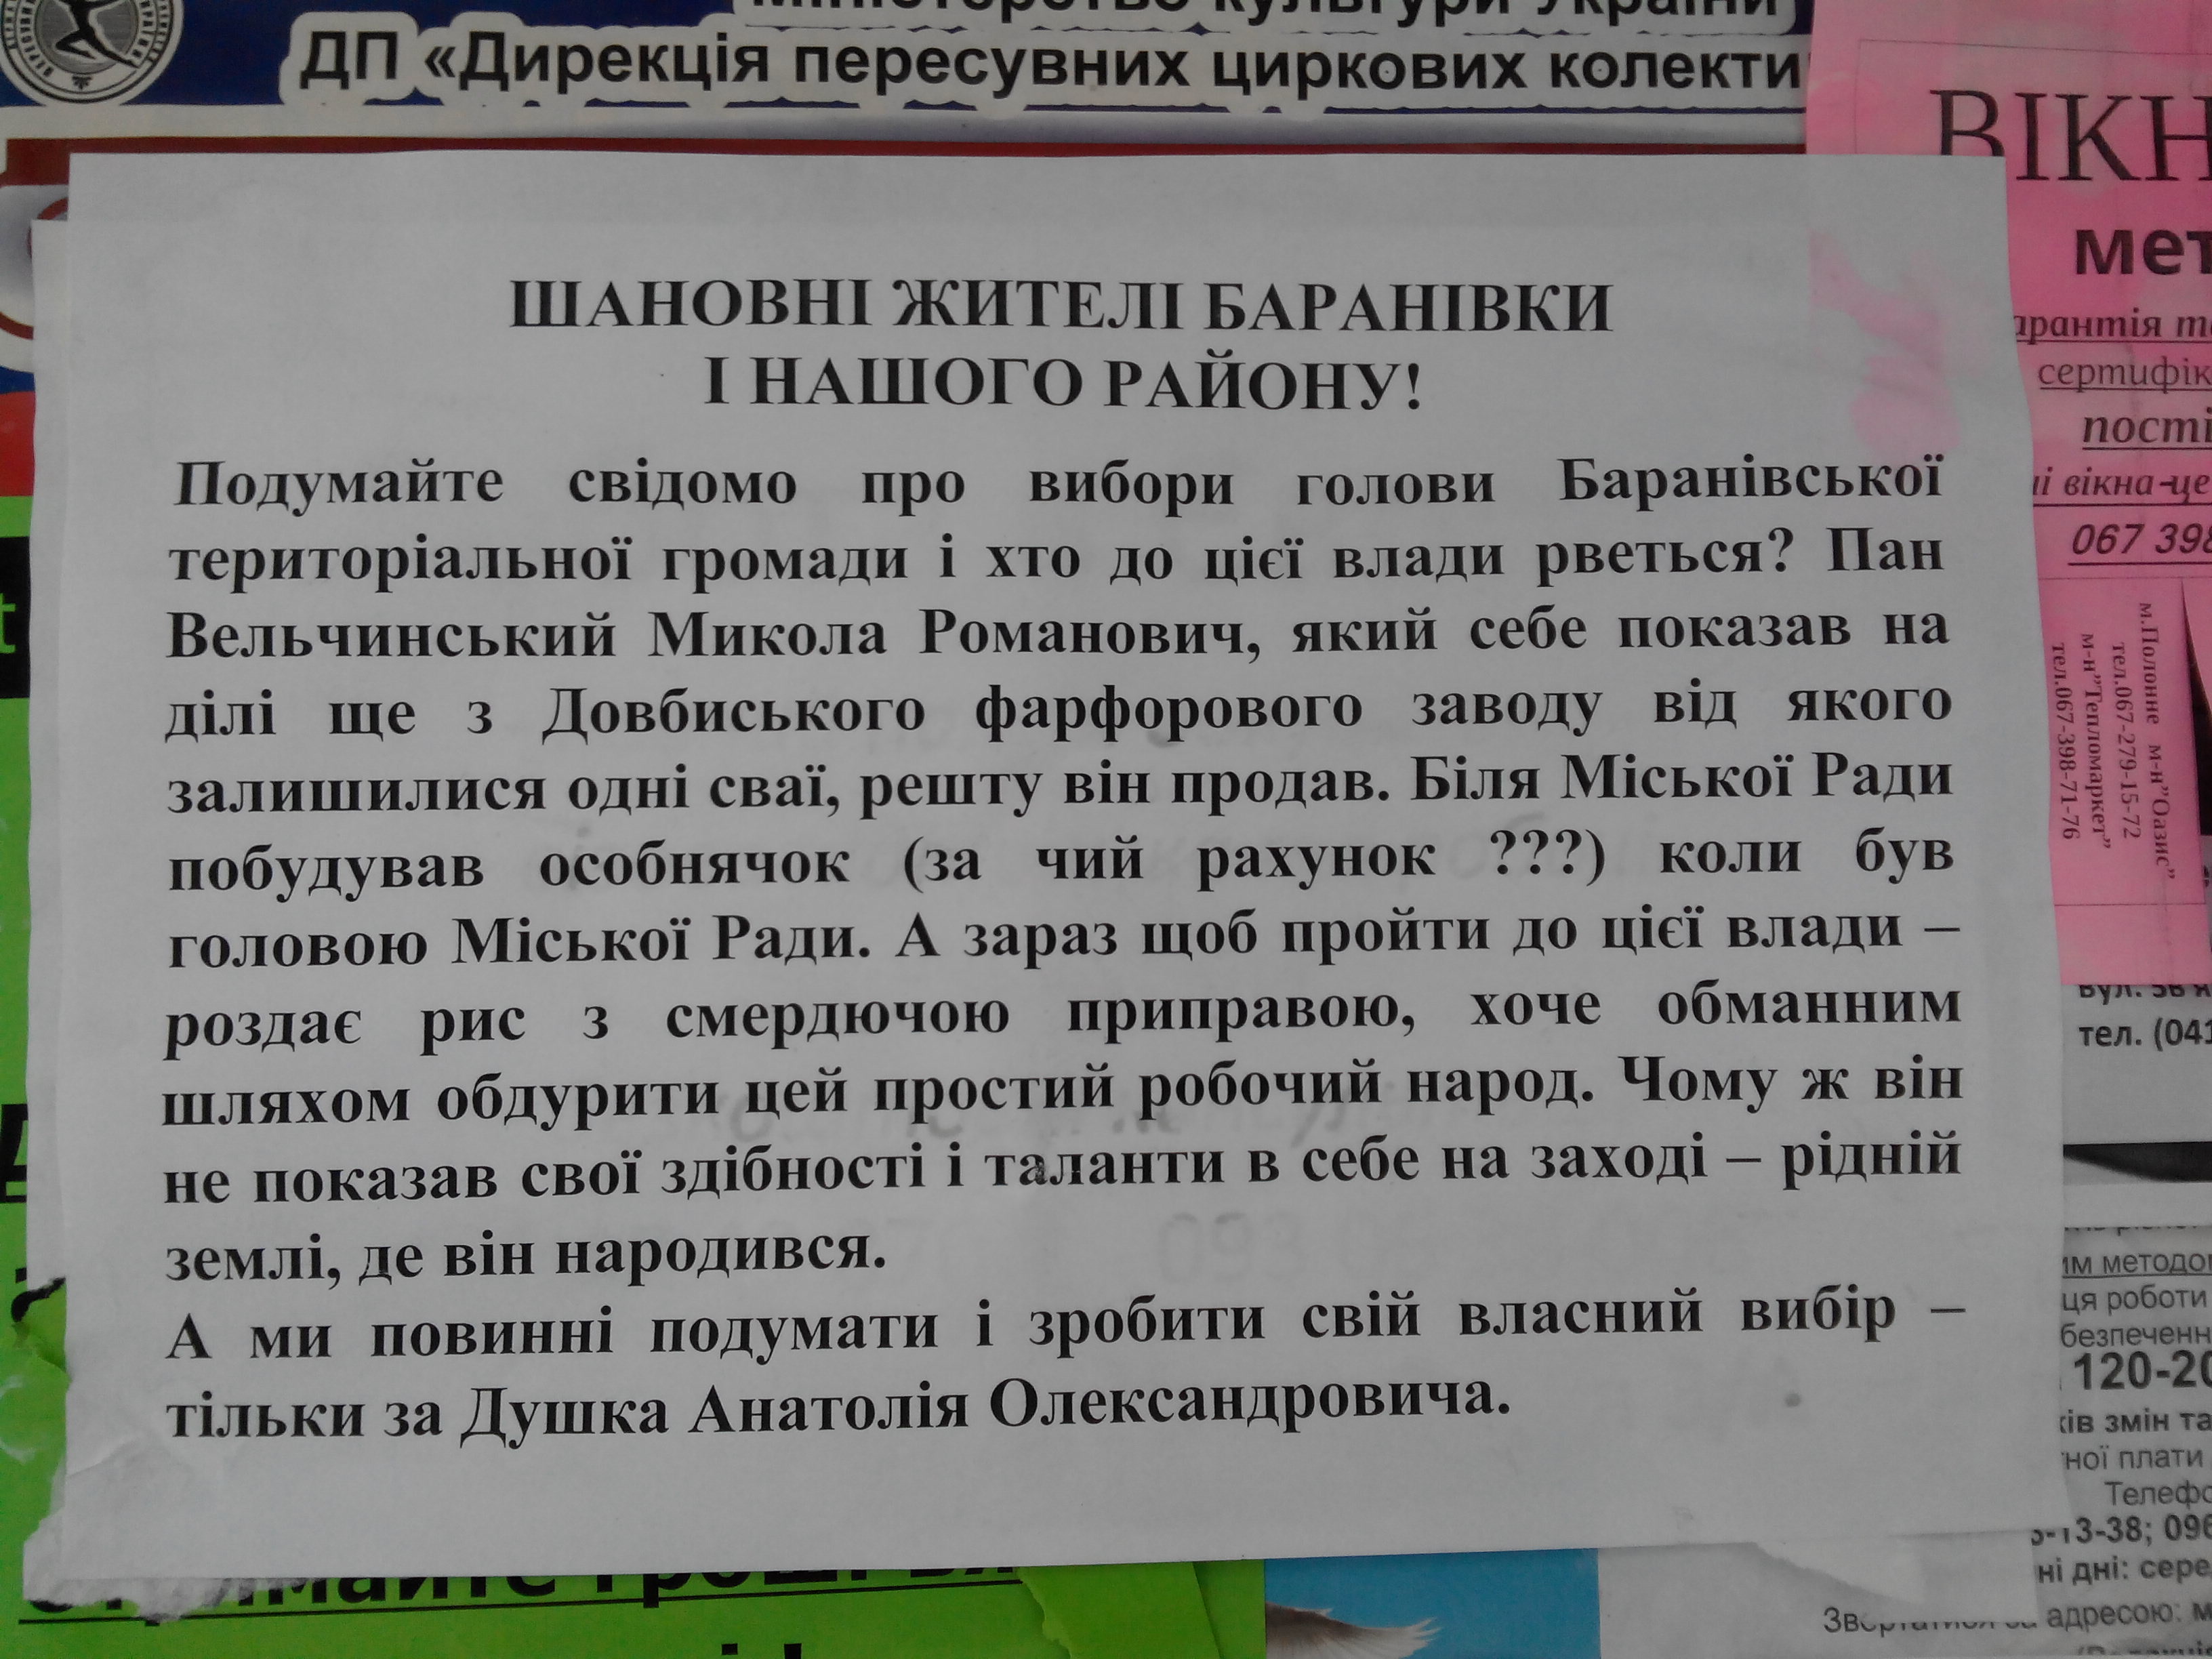 Dodatok 1 Baranivka chorny piar proty Velchynskogo